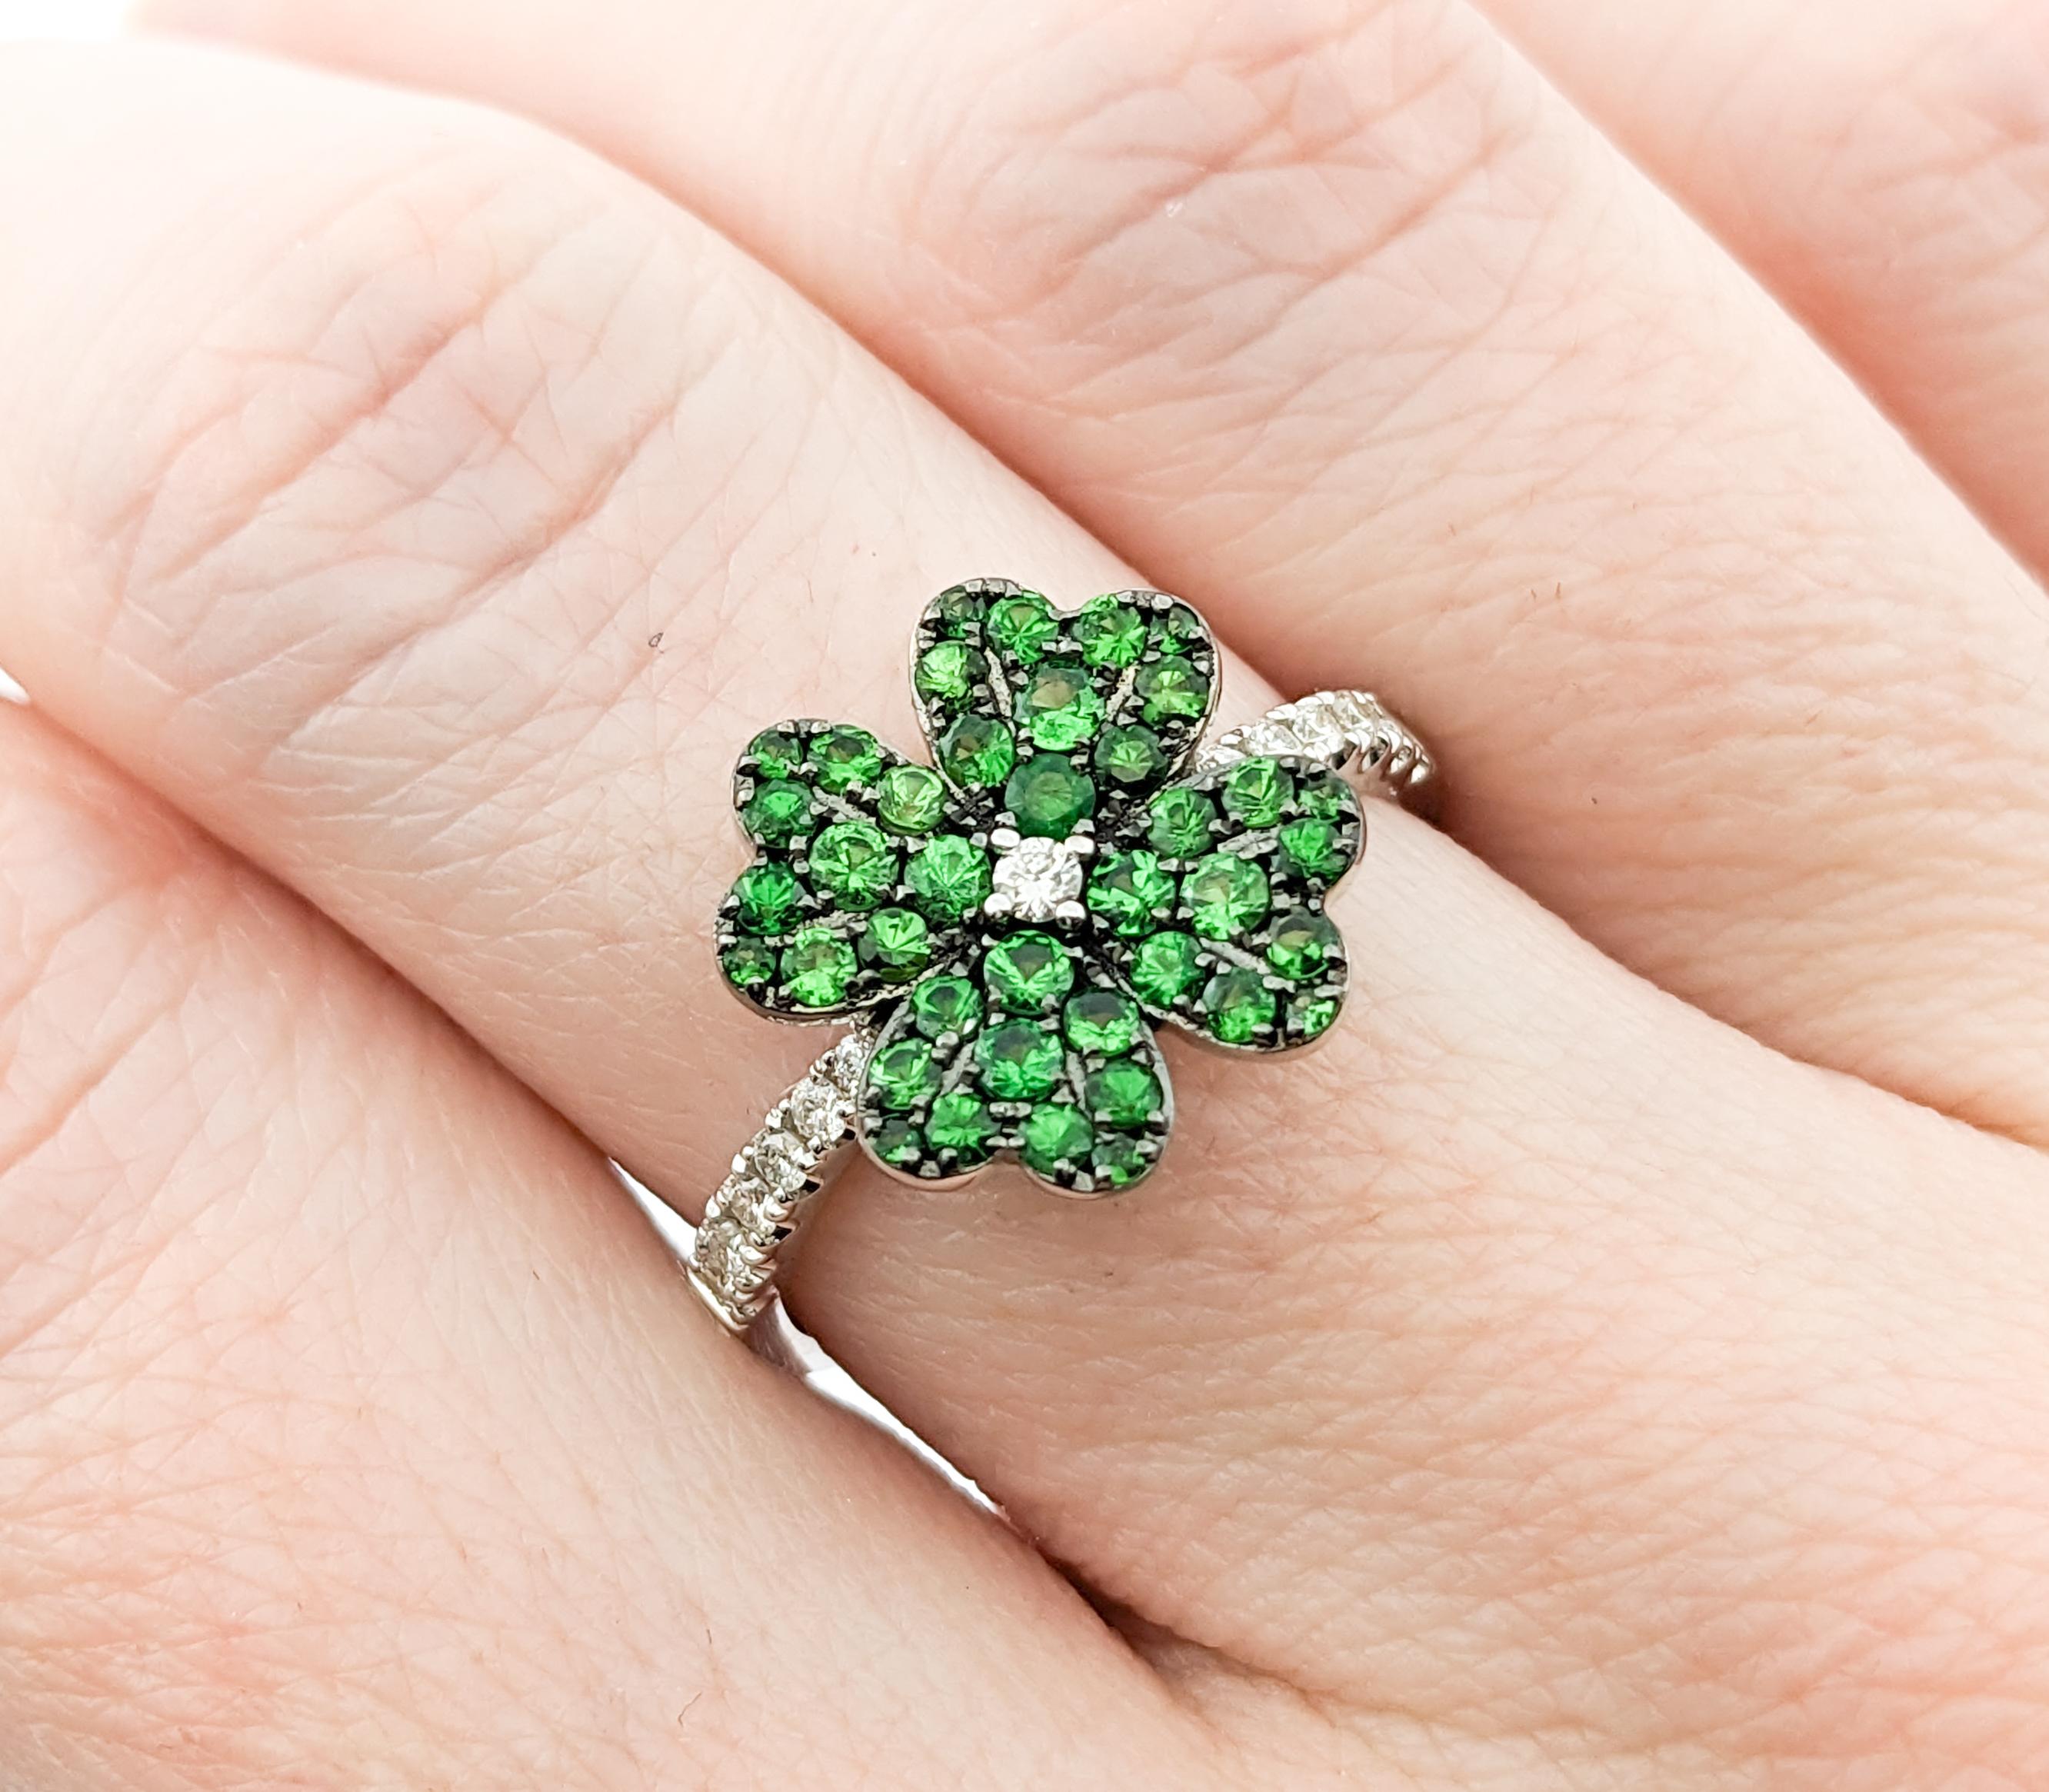 Four Leaf Clover Shamrock Ring with Tsavorite Garnets & Diamonds in 14kt White G For Sale 4